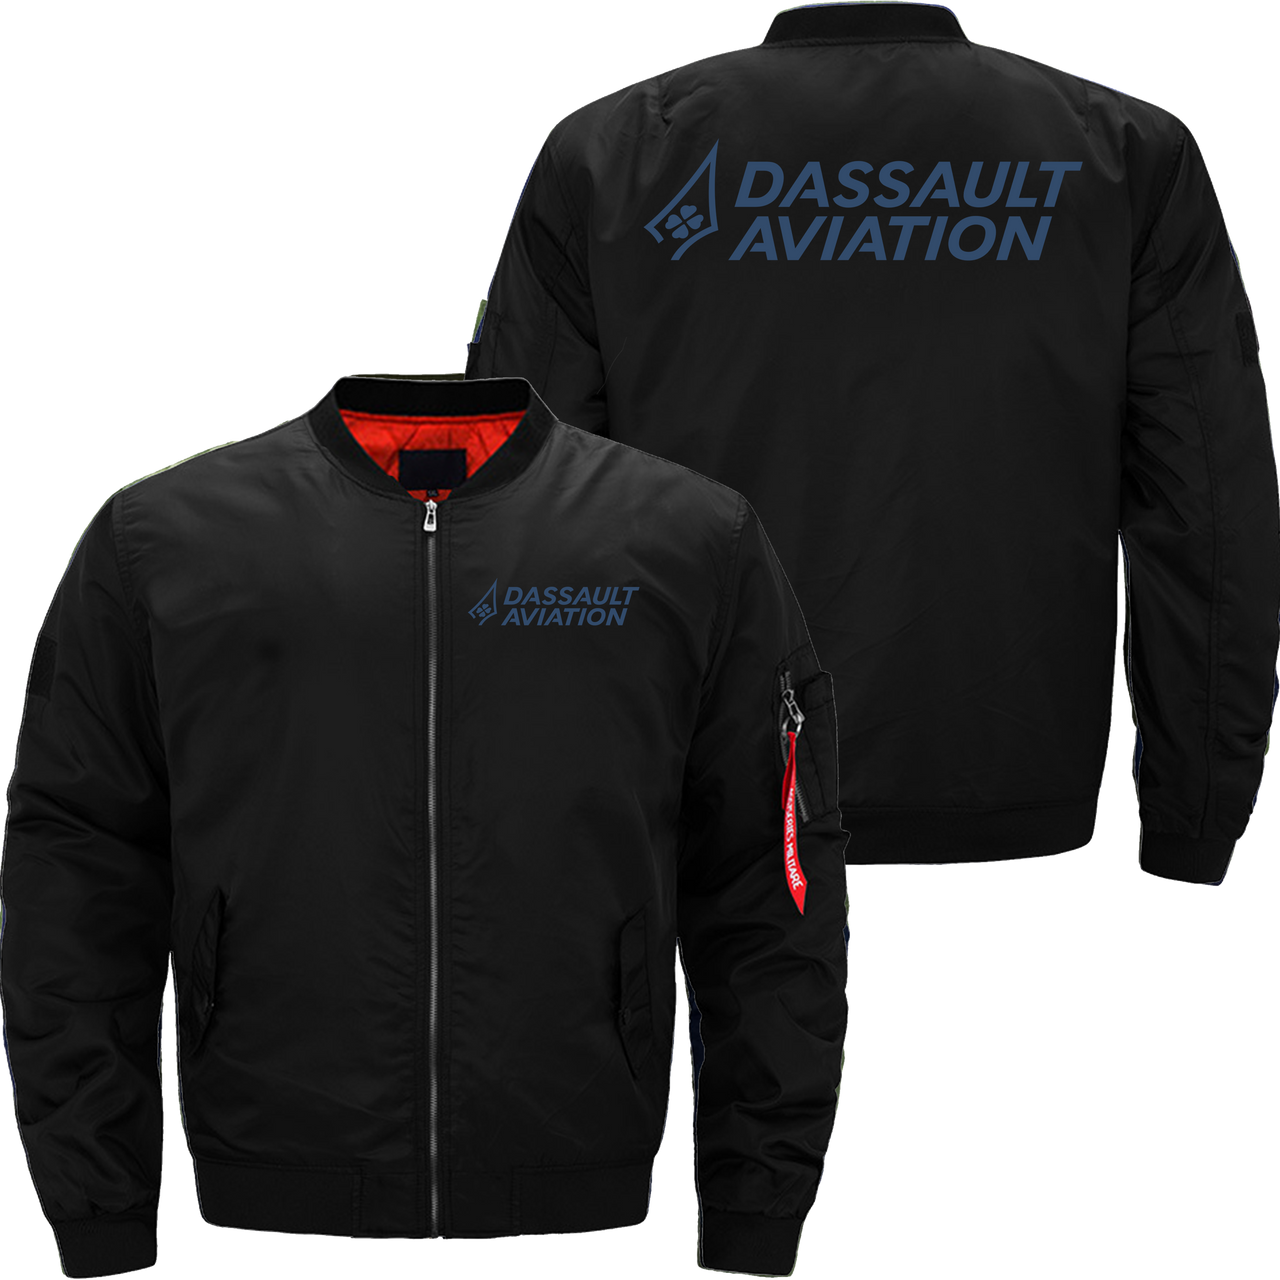 Dassault aviation Jacket